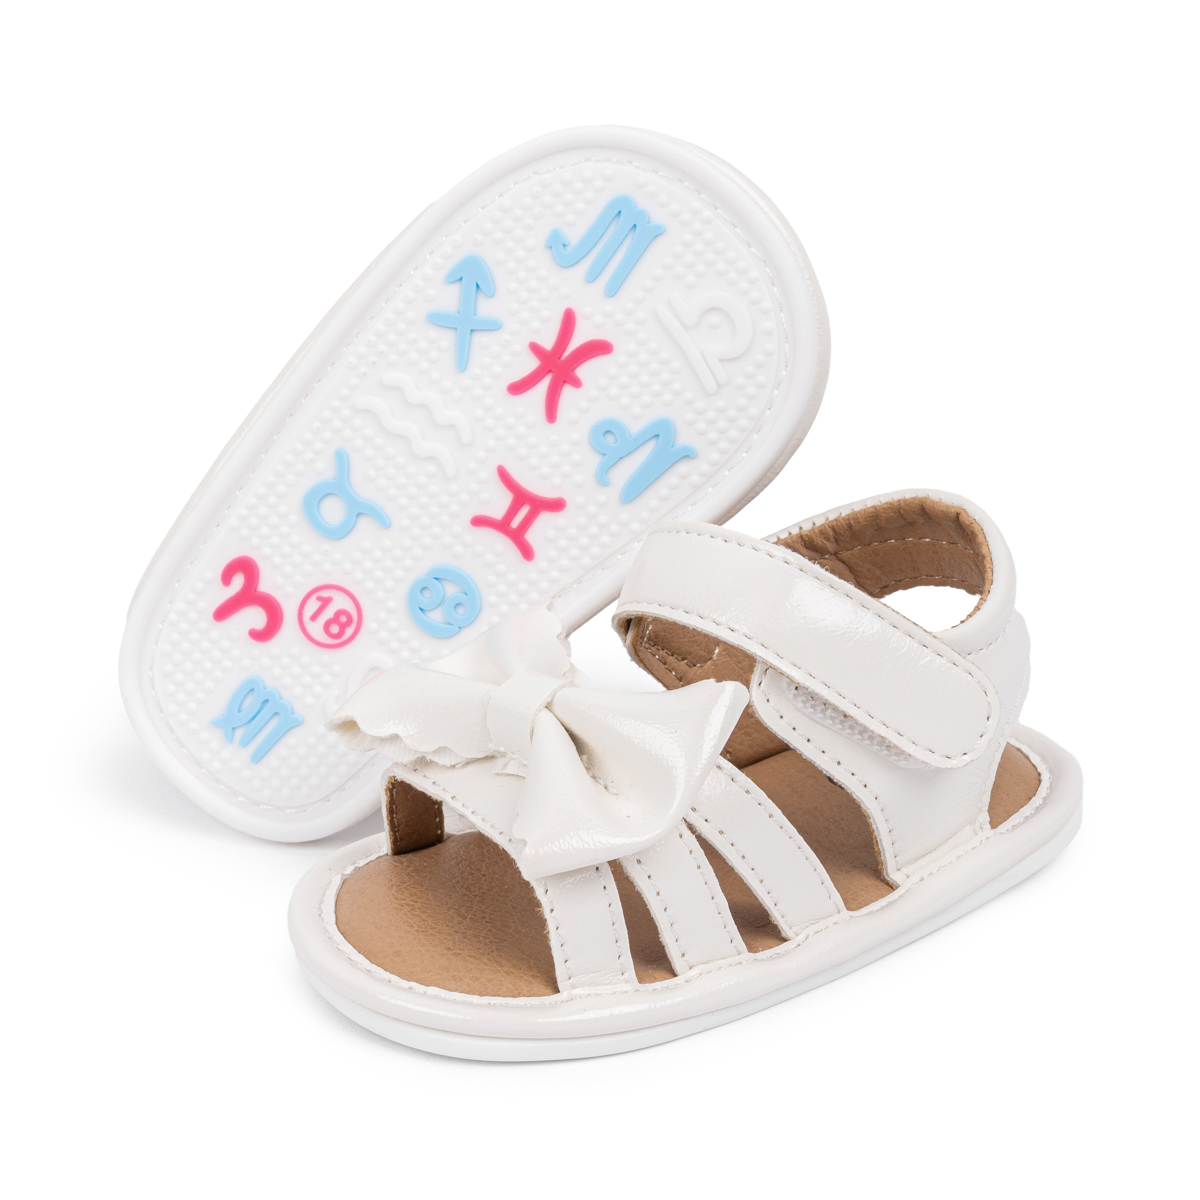 PU Upper PVC Anti-slip sole Baby Sandals